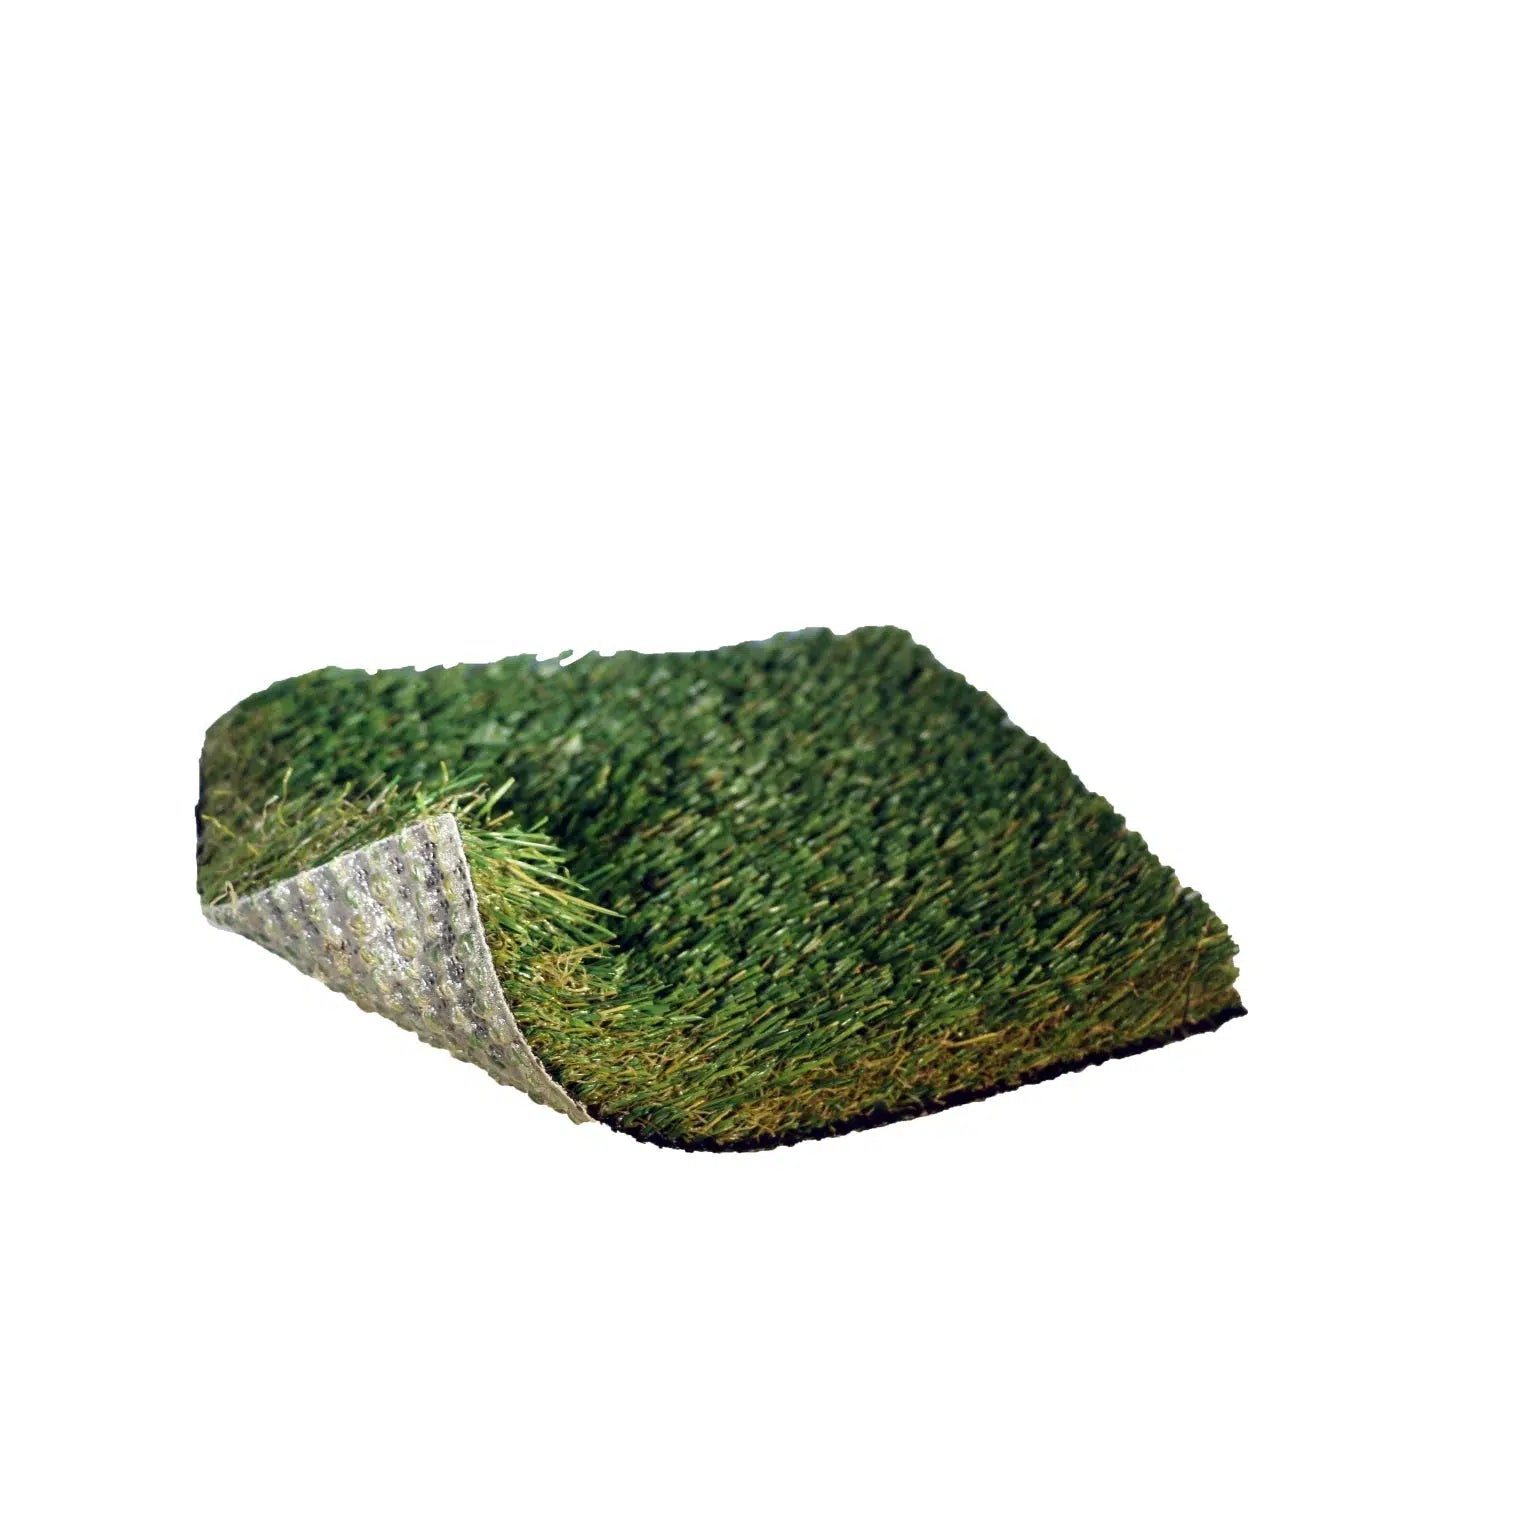 Sedona Classic-Synthetic Grass Turf-GrassTex-G-Field Apple Tan-Silverback- Perforated-2"-KNB Mills